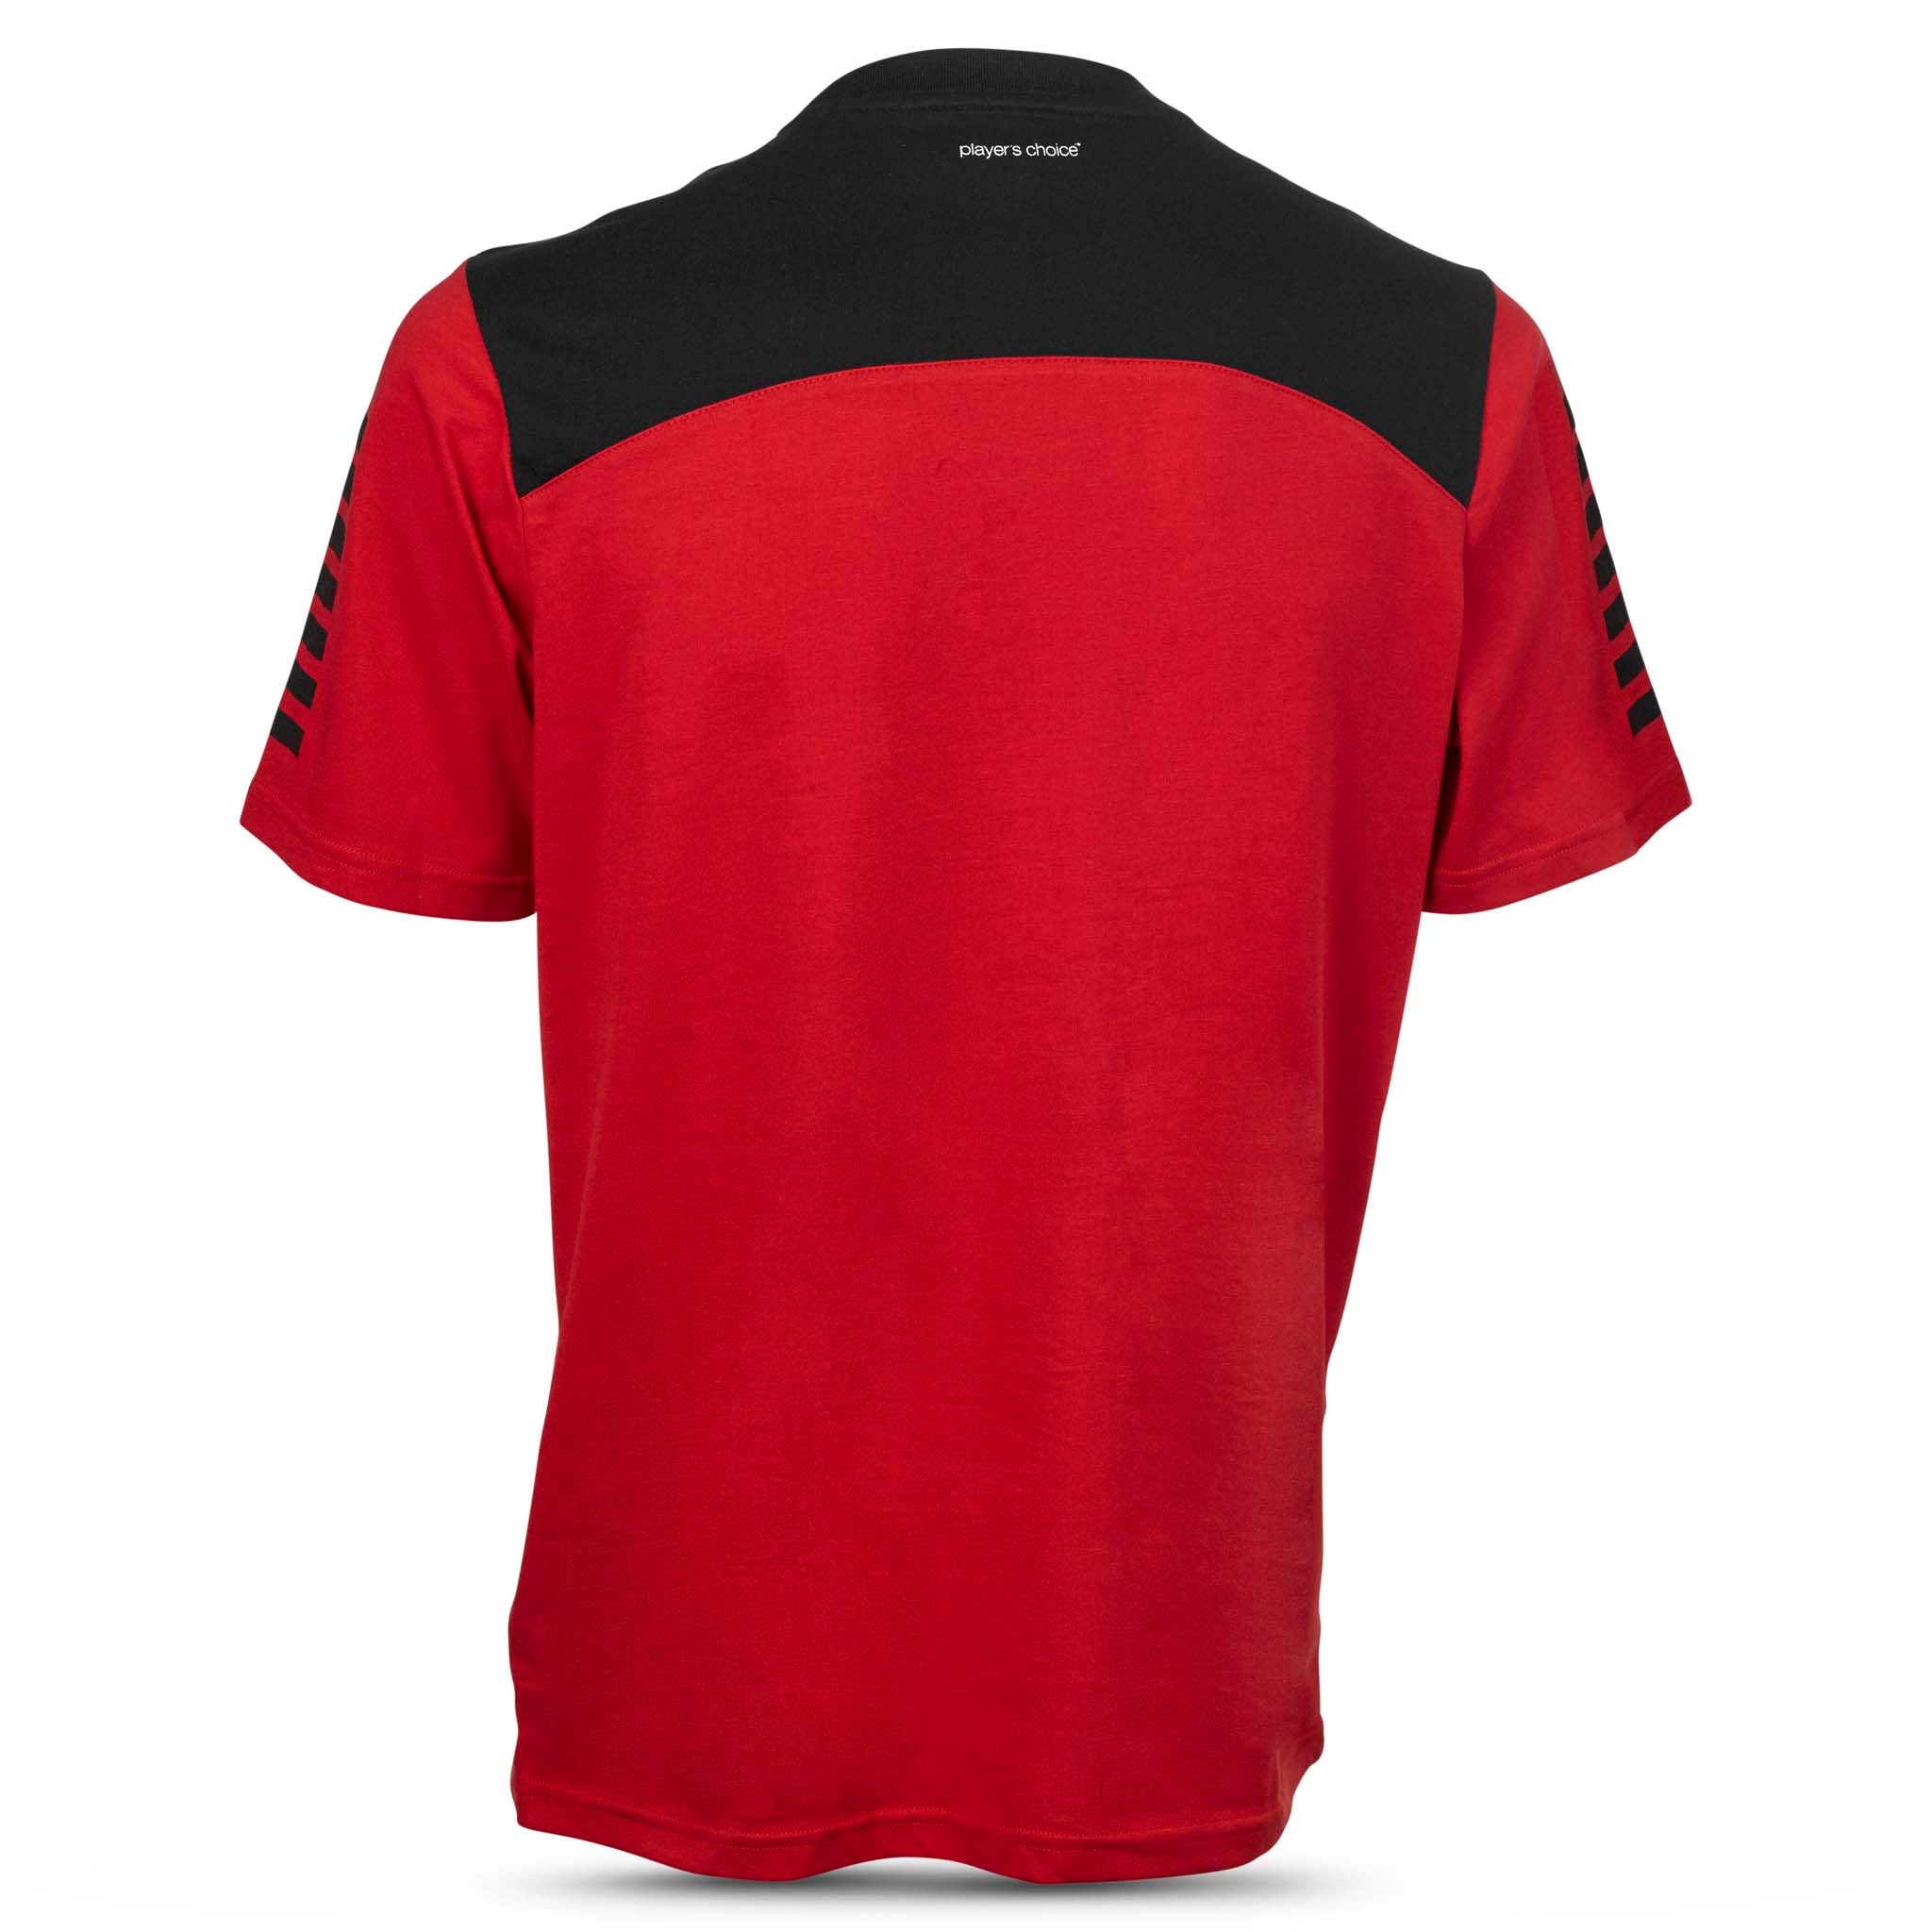 Oxford T-Shirt #farve_rød/sort #farve_rød/sort